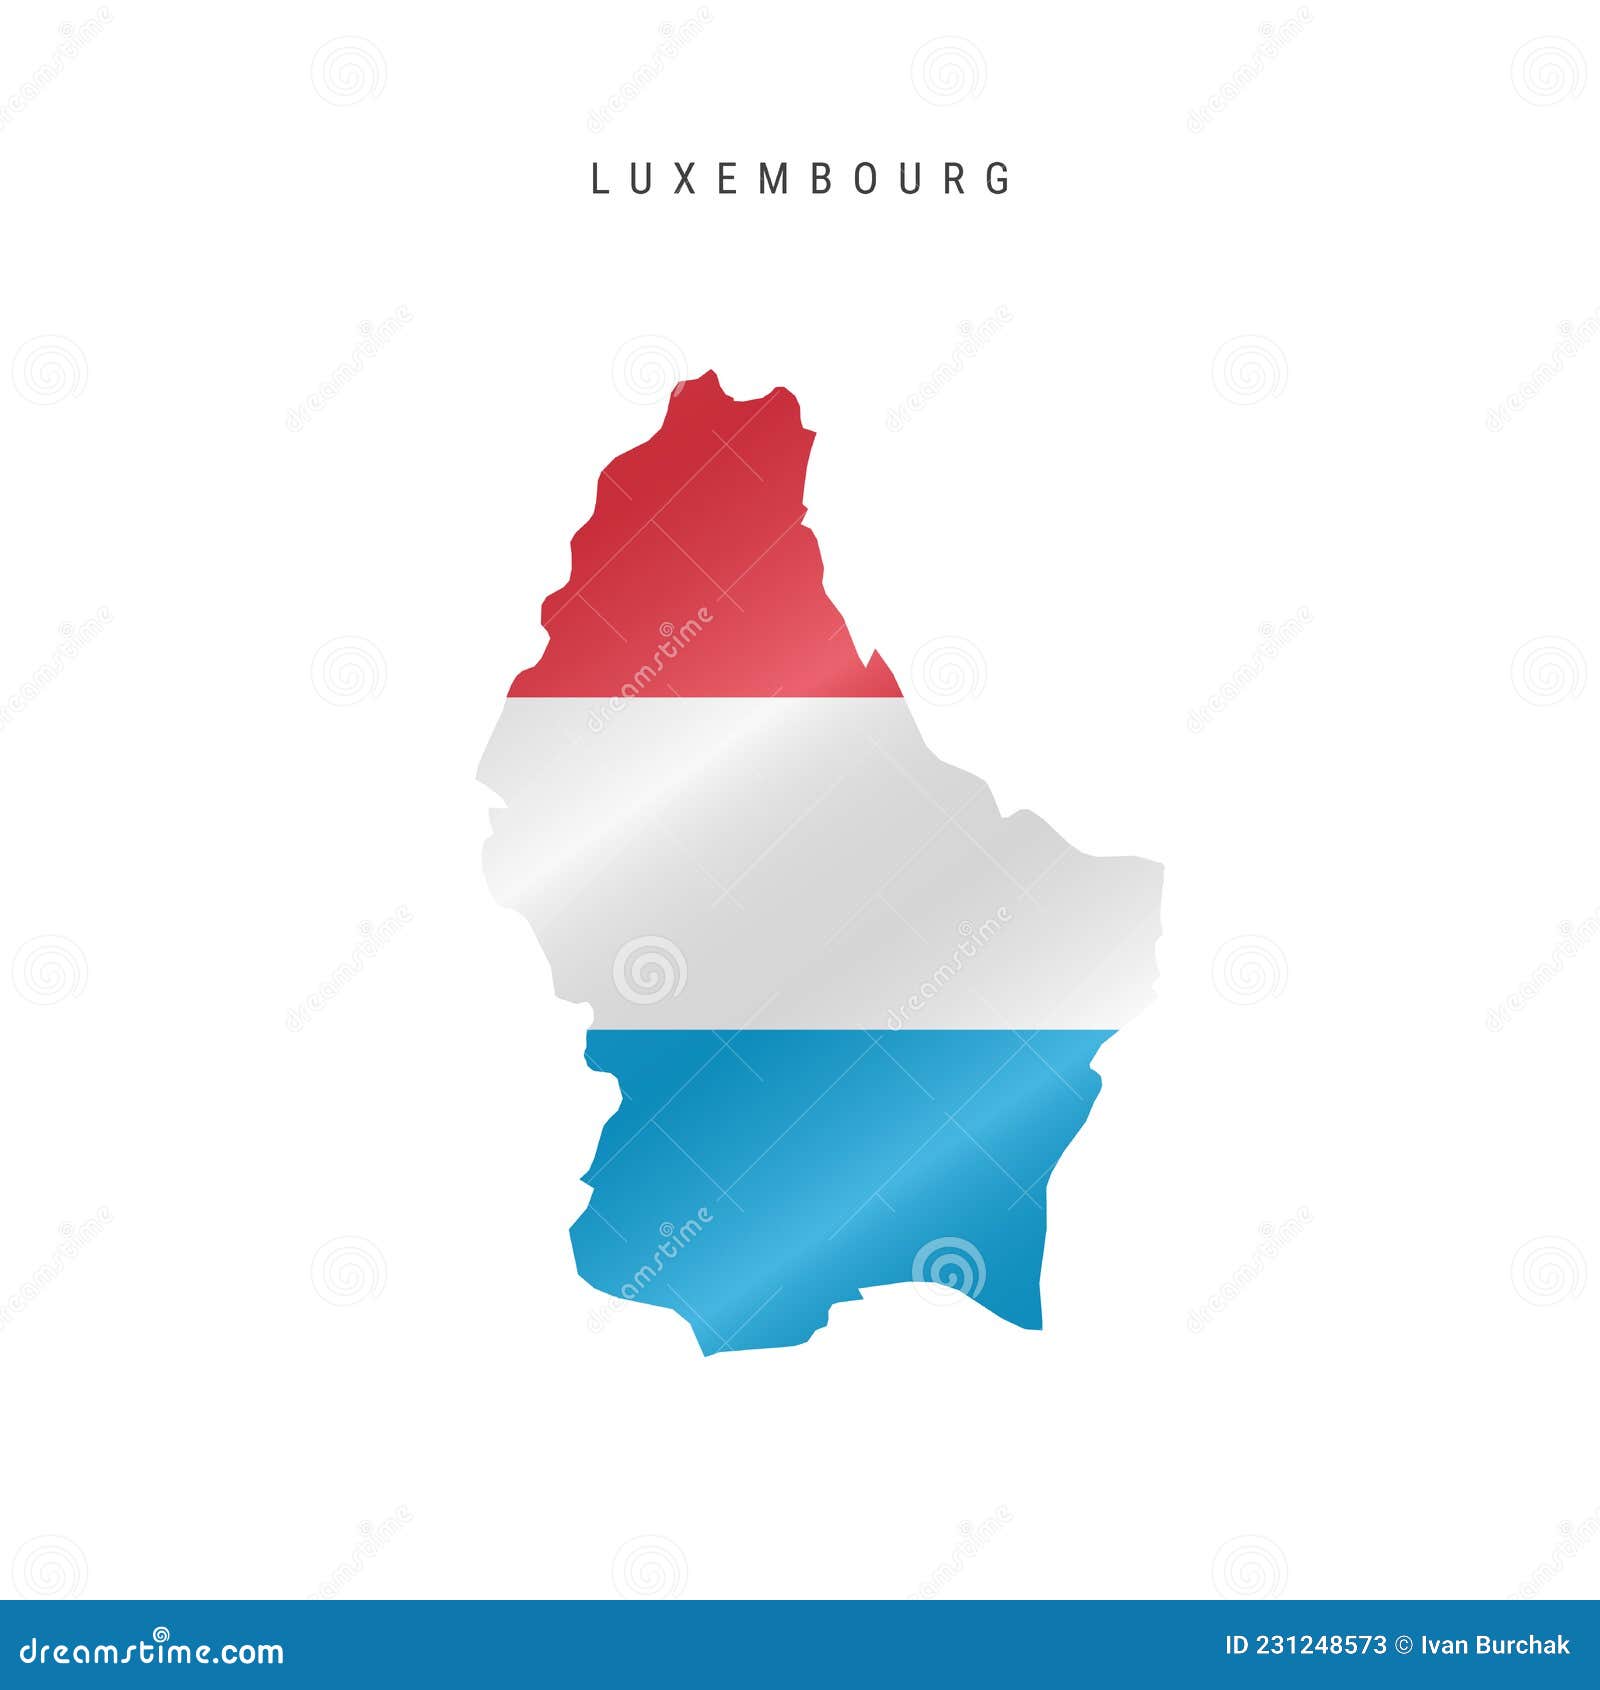 卢森堡主题国旗 免费图片 - Public Domain Pictures